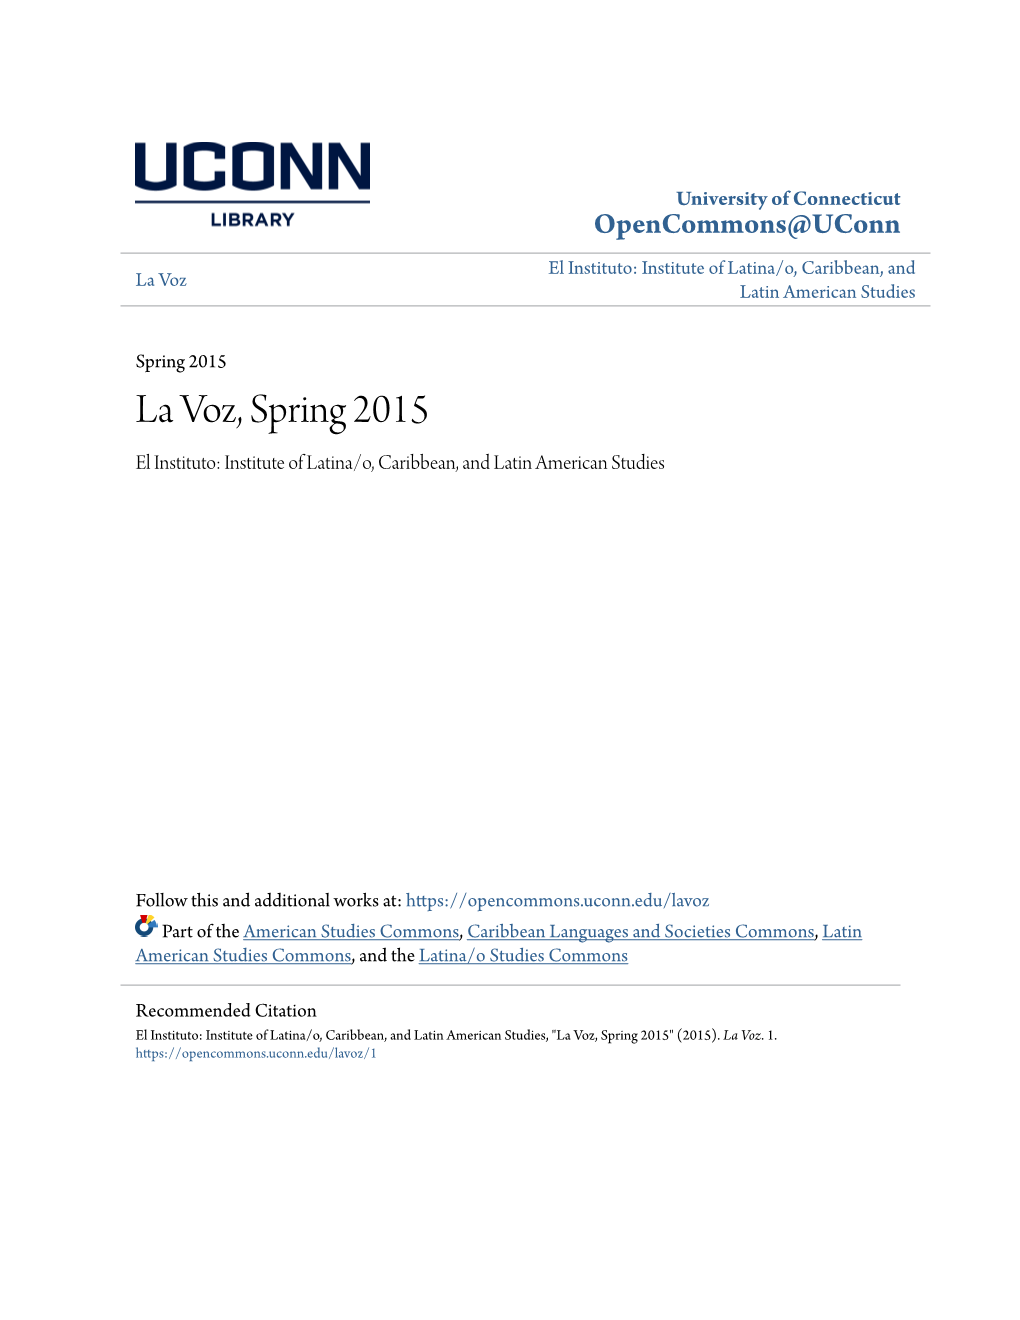 La Voz, Spring 2015 El Instituto: Institute of Latina/O, Caribbean, and Latin American Studies